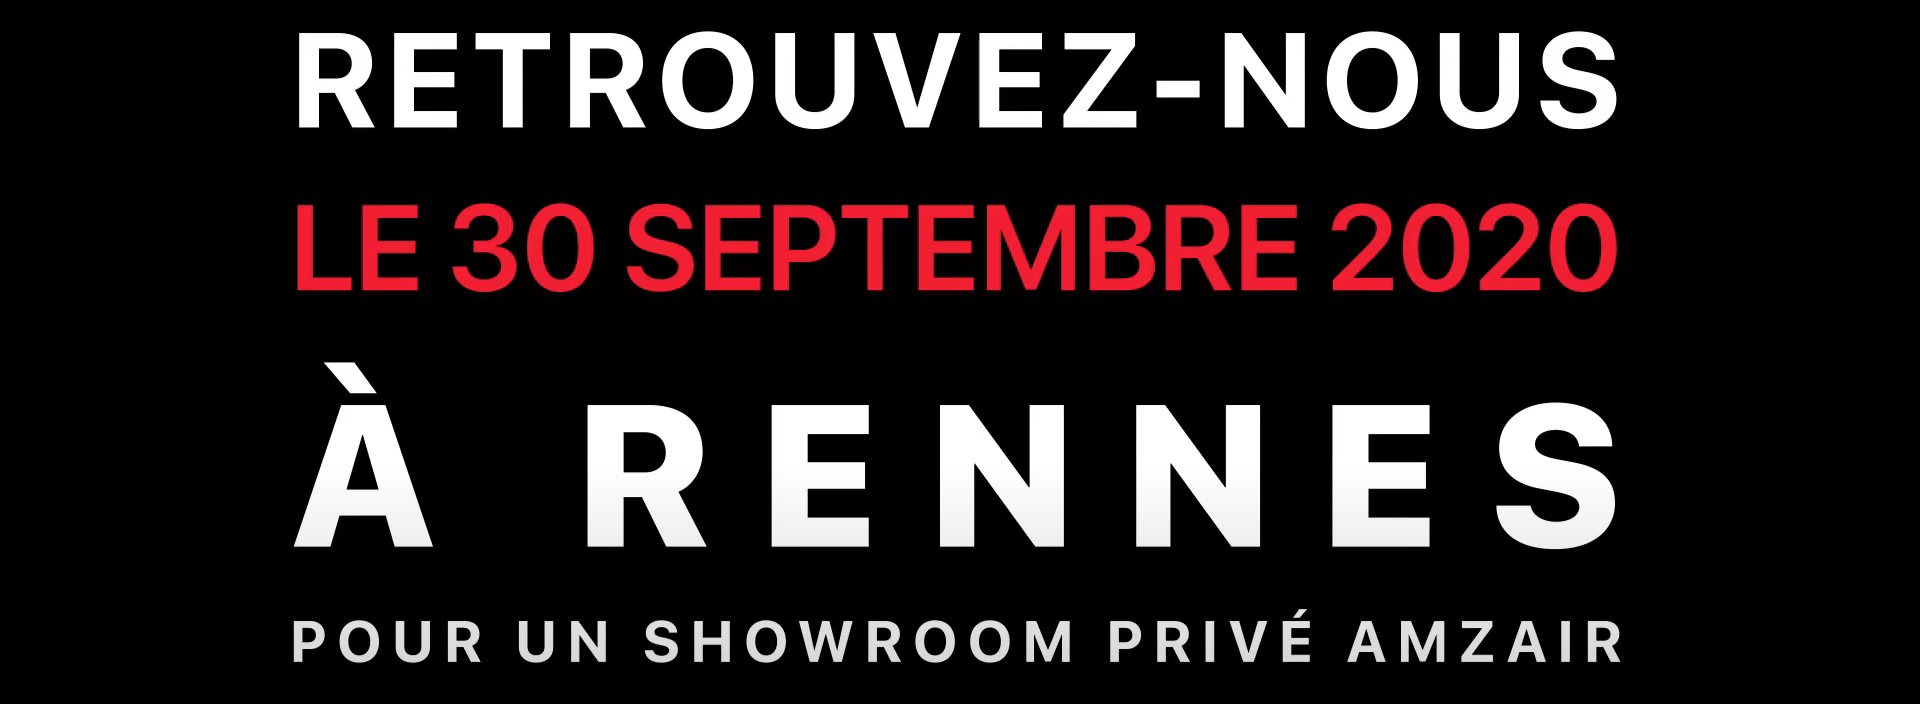 Retrouvez nous à Rennes le 30 septembre 2020 pour un showroom privé AMZAIR